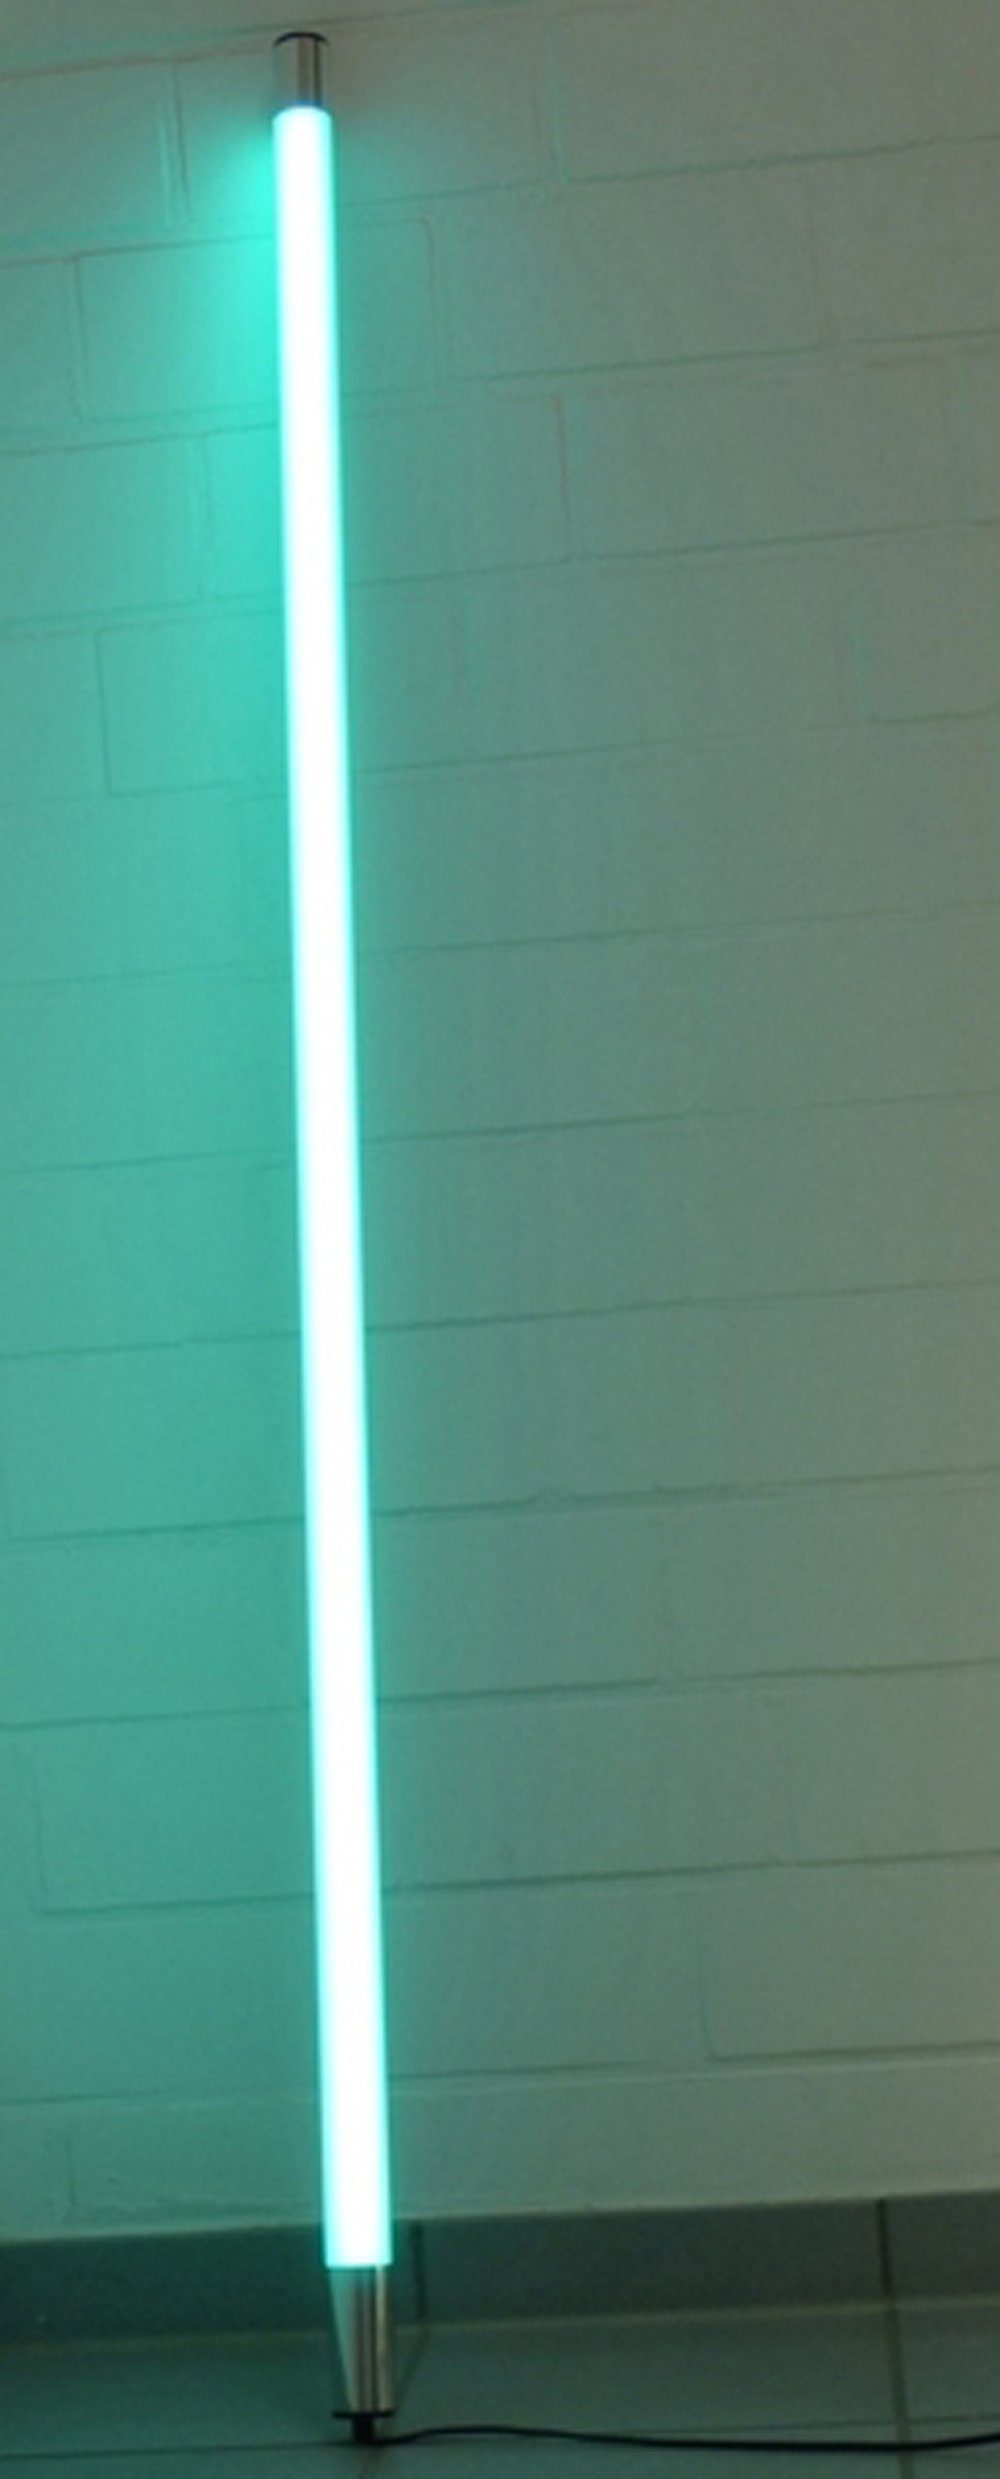 LED Satiniert IP20 LED 0,63m XENON 6861 Länge Leuchtstab 950 Lumen Innen Xenon Wandleuchte T8, Röhre Türkis, LED